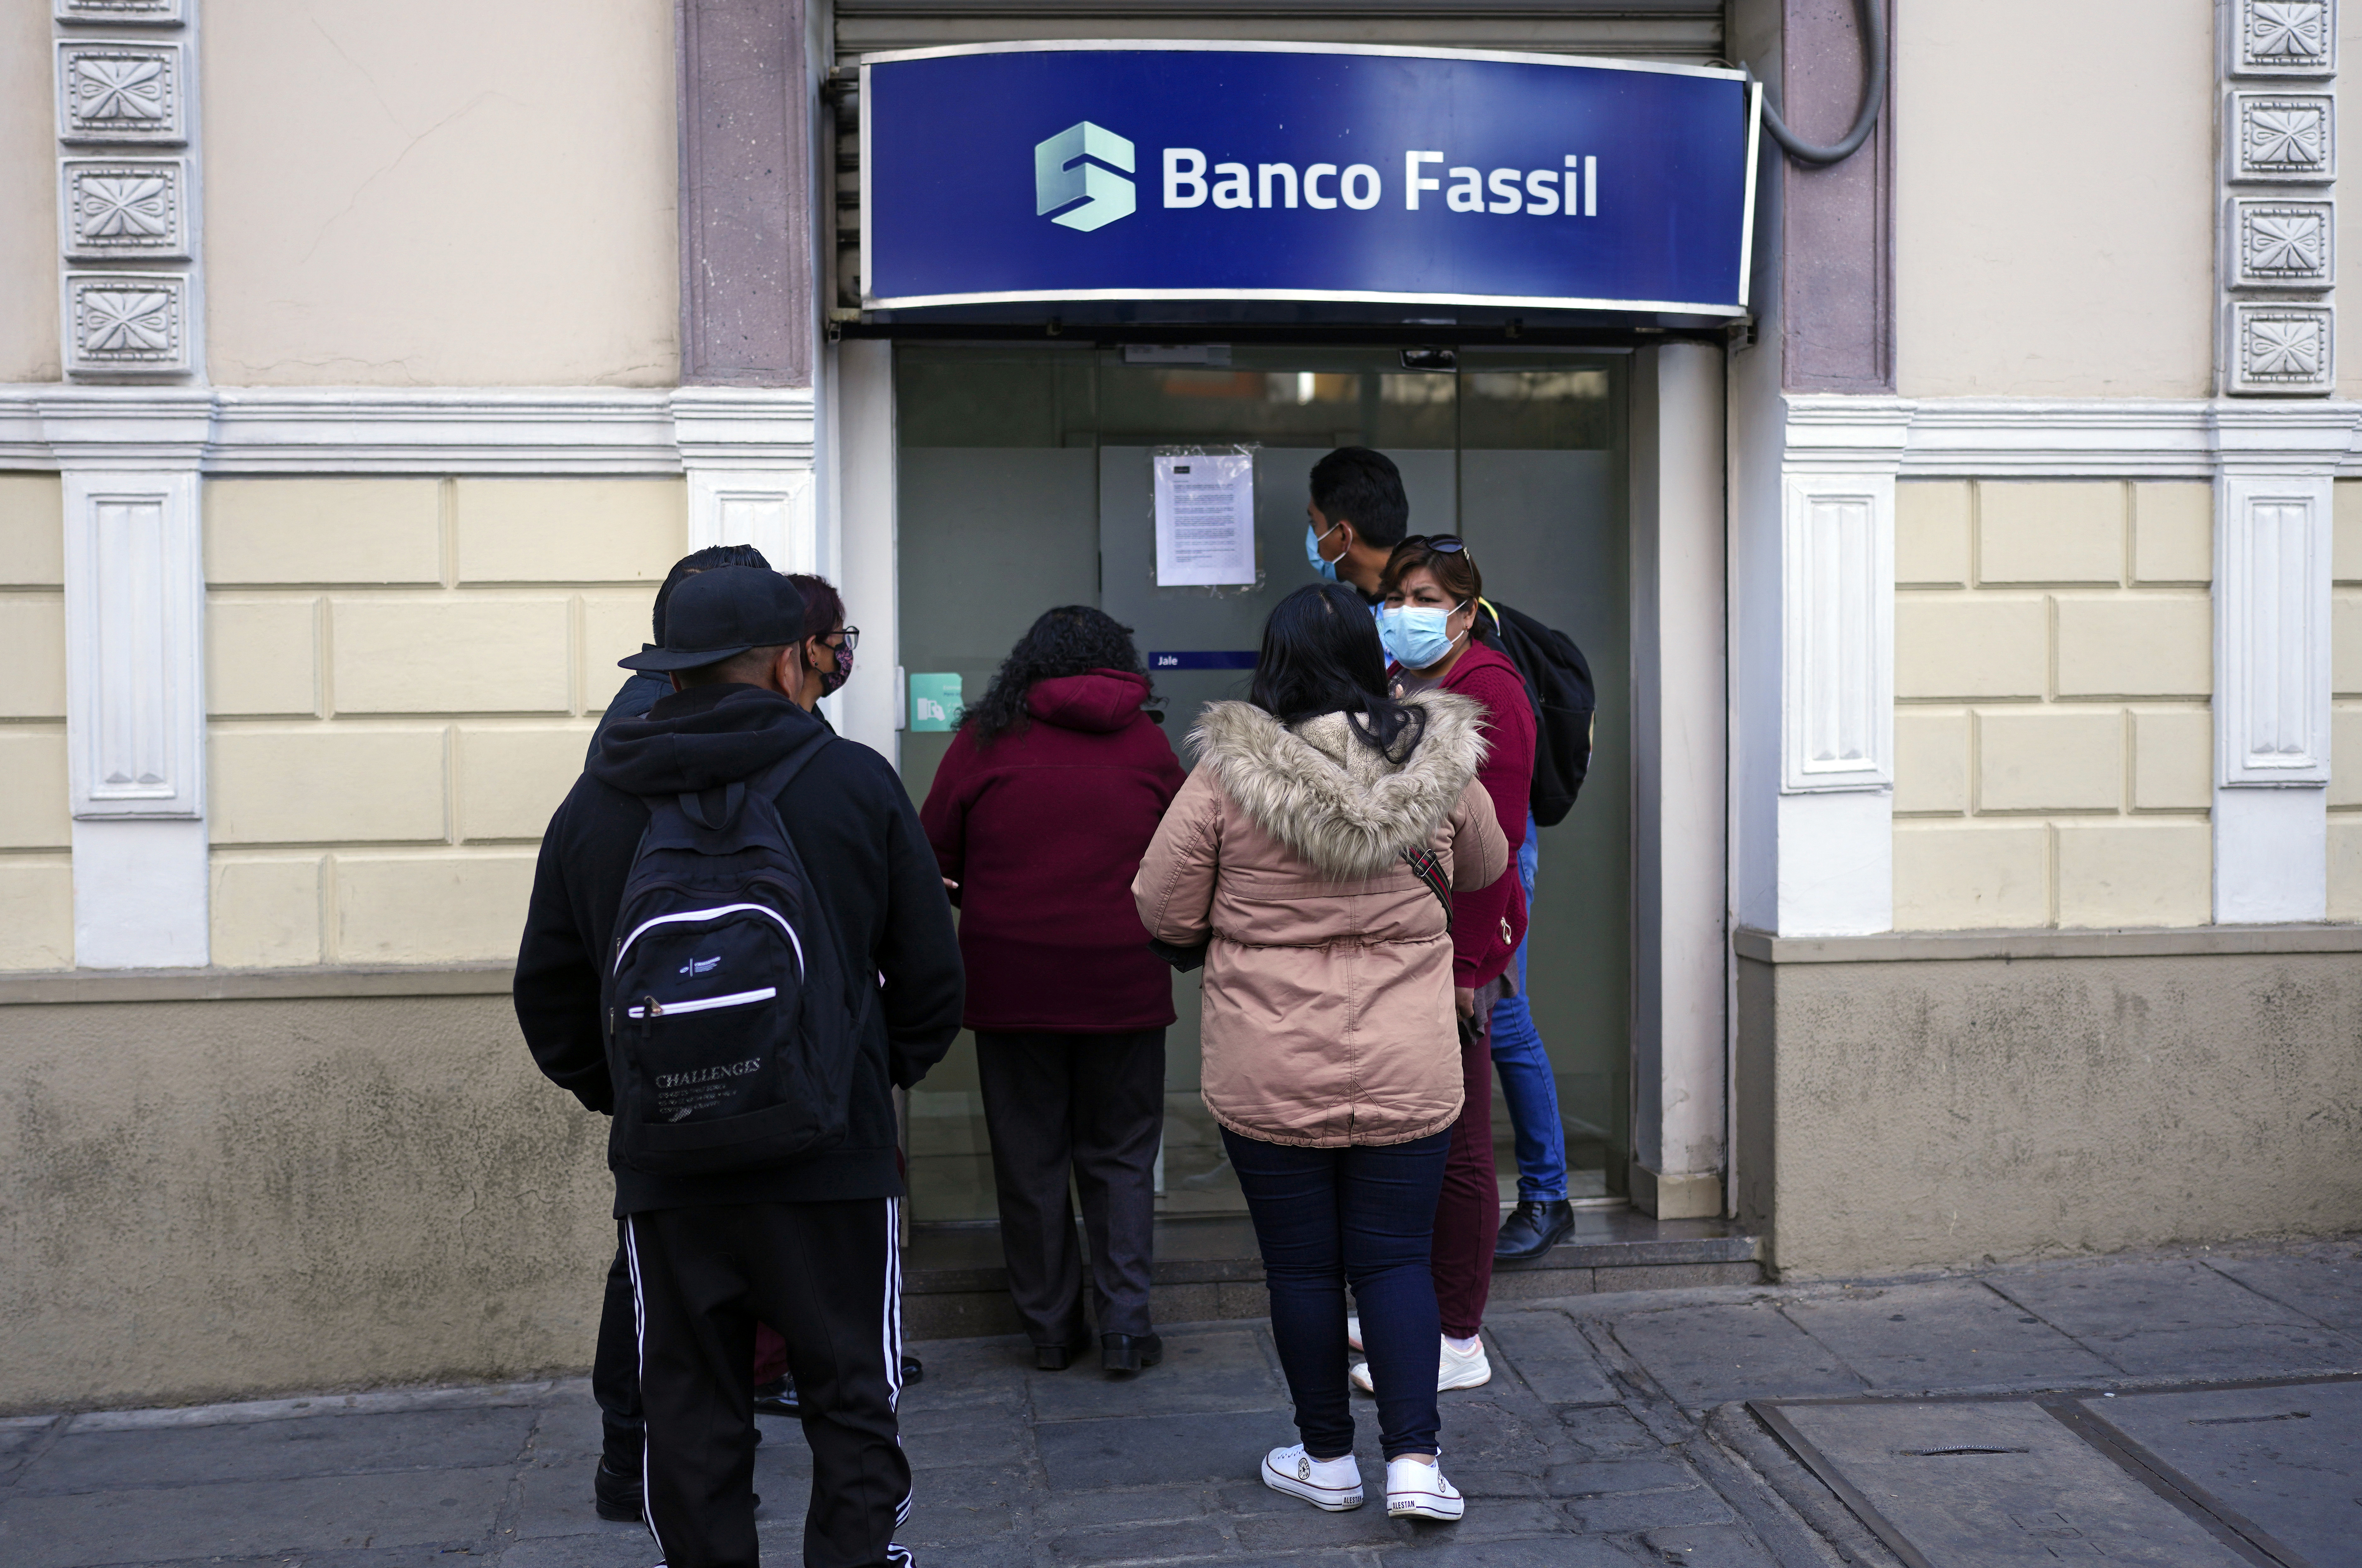 Crisis en Bolivia: intervinieron uno de los bancos más grandes del país y los clientes tomaron las sedes